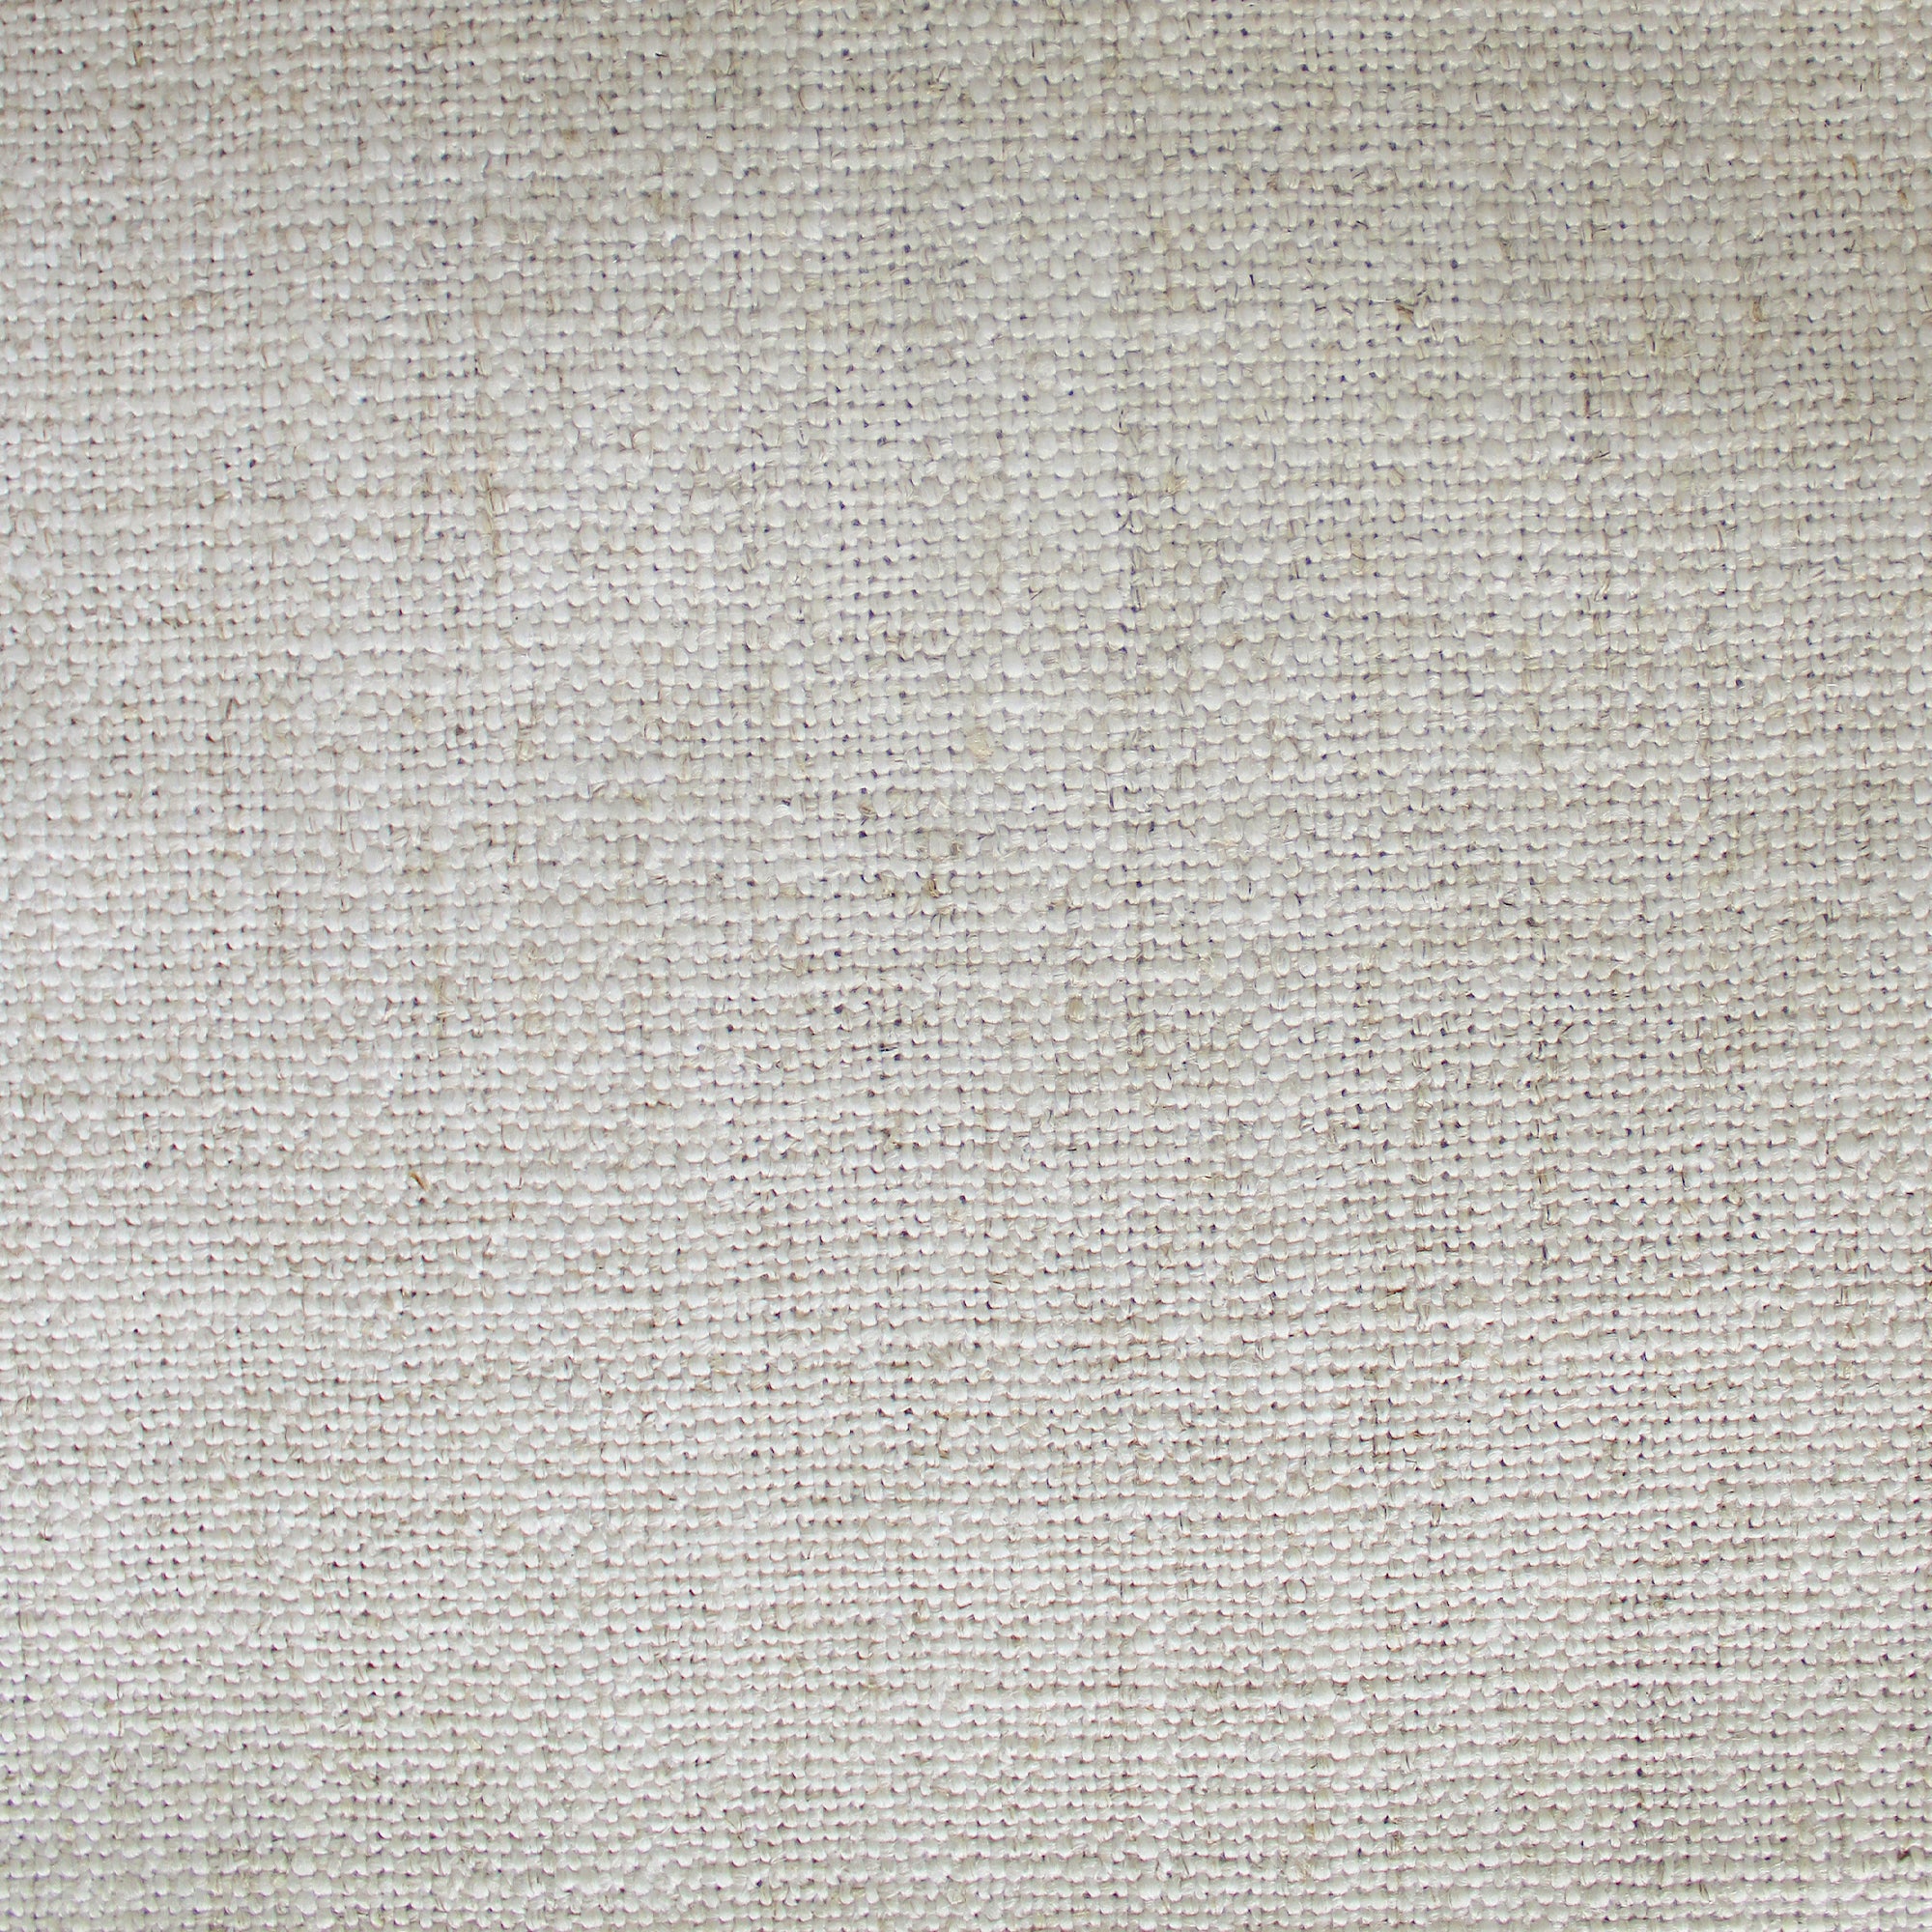 Croft Fabric | Textured Solid Linen Blend